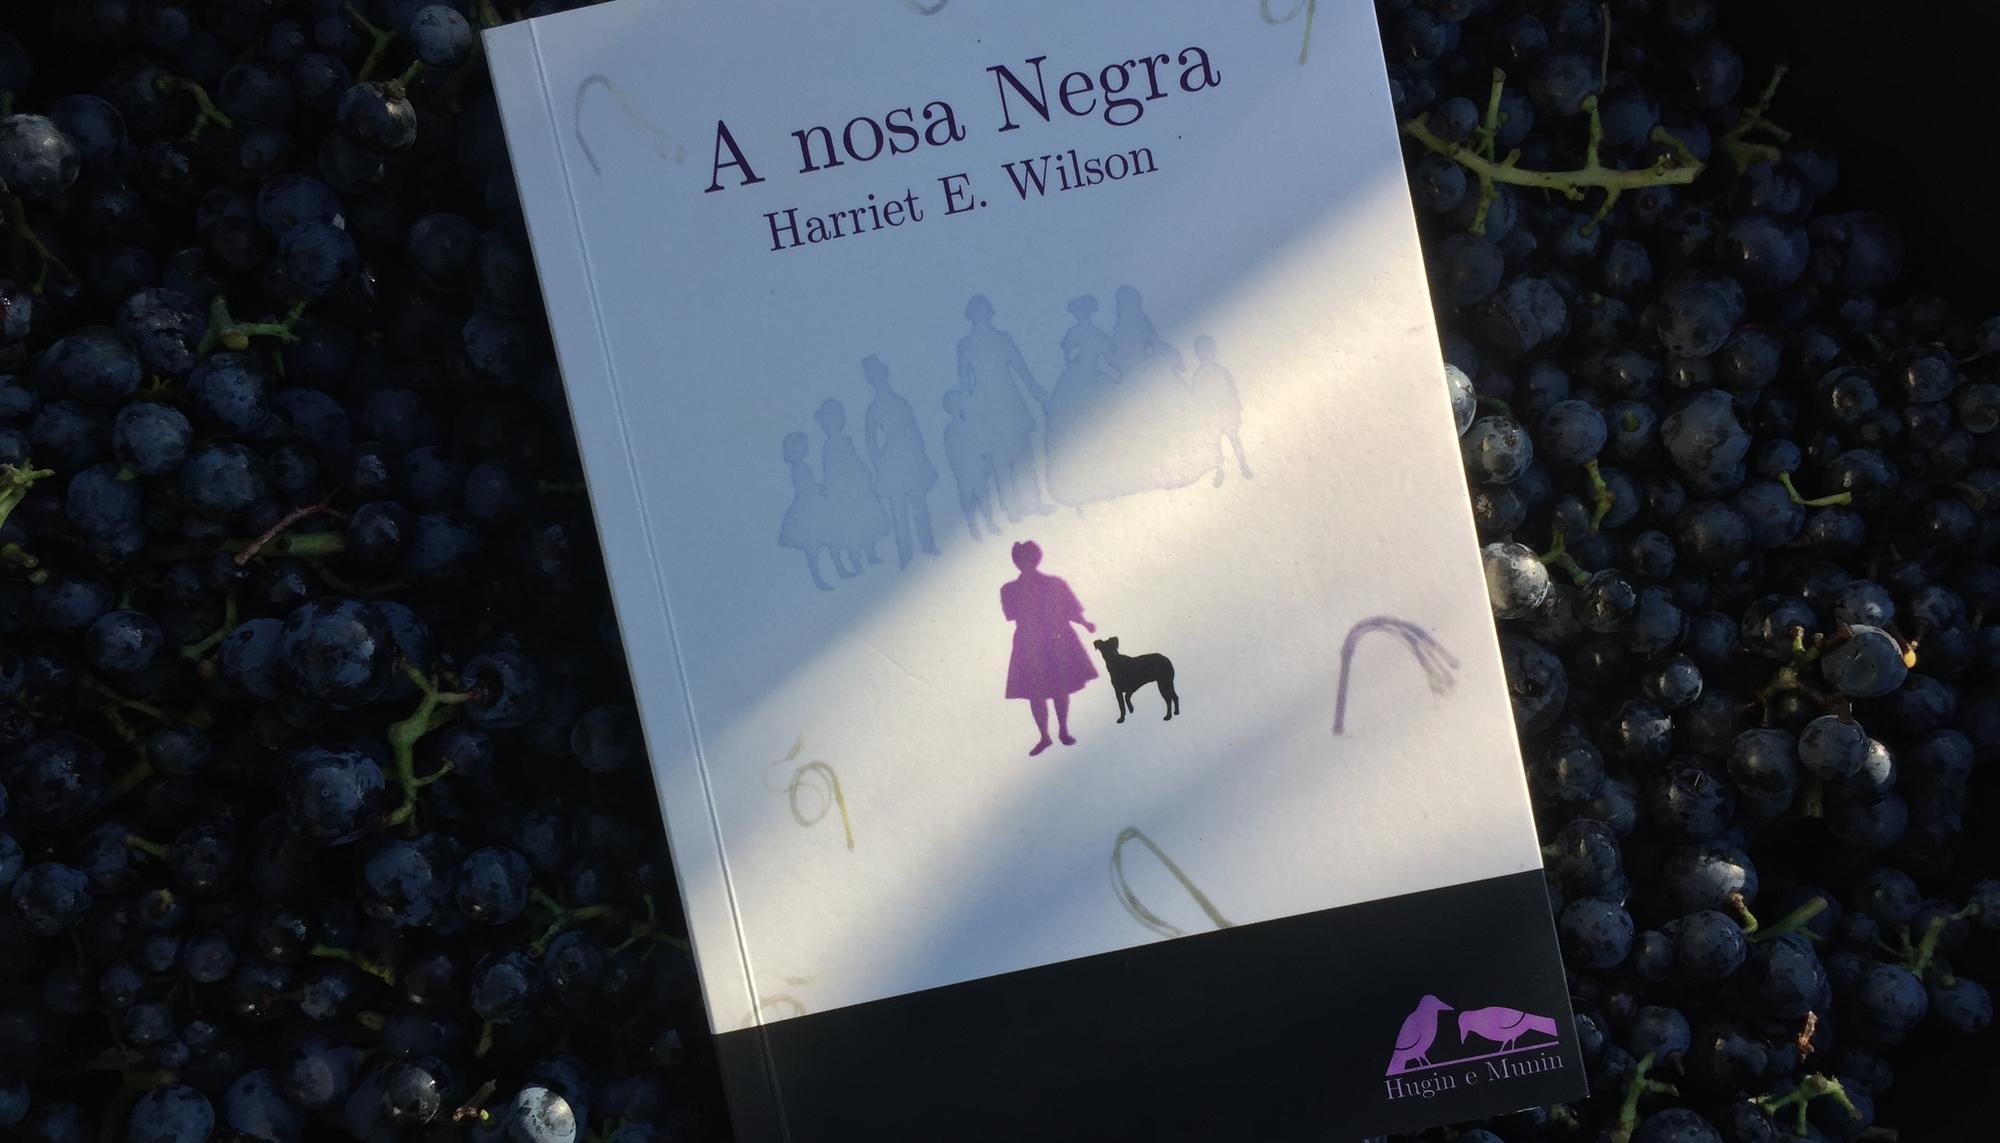 A nosa negra Harriet E. Wilson 